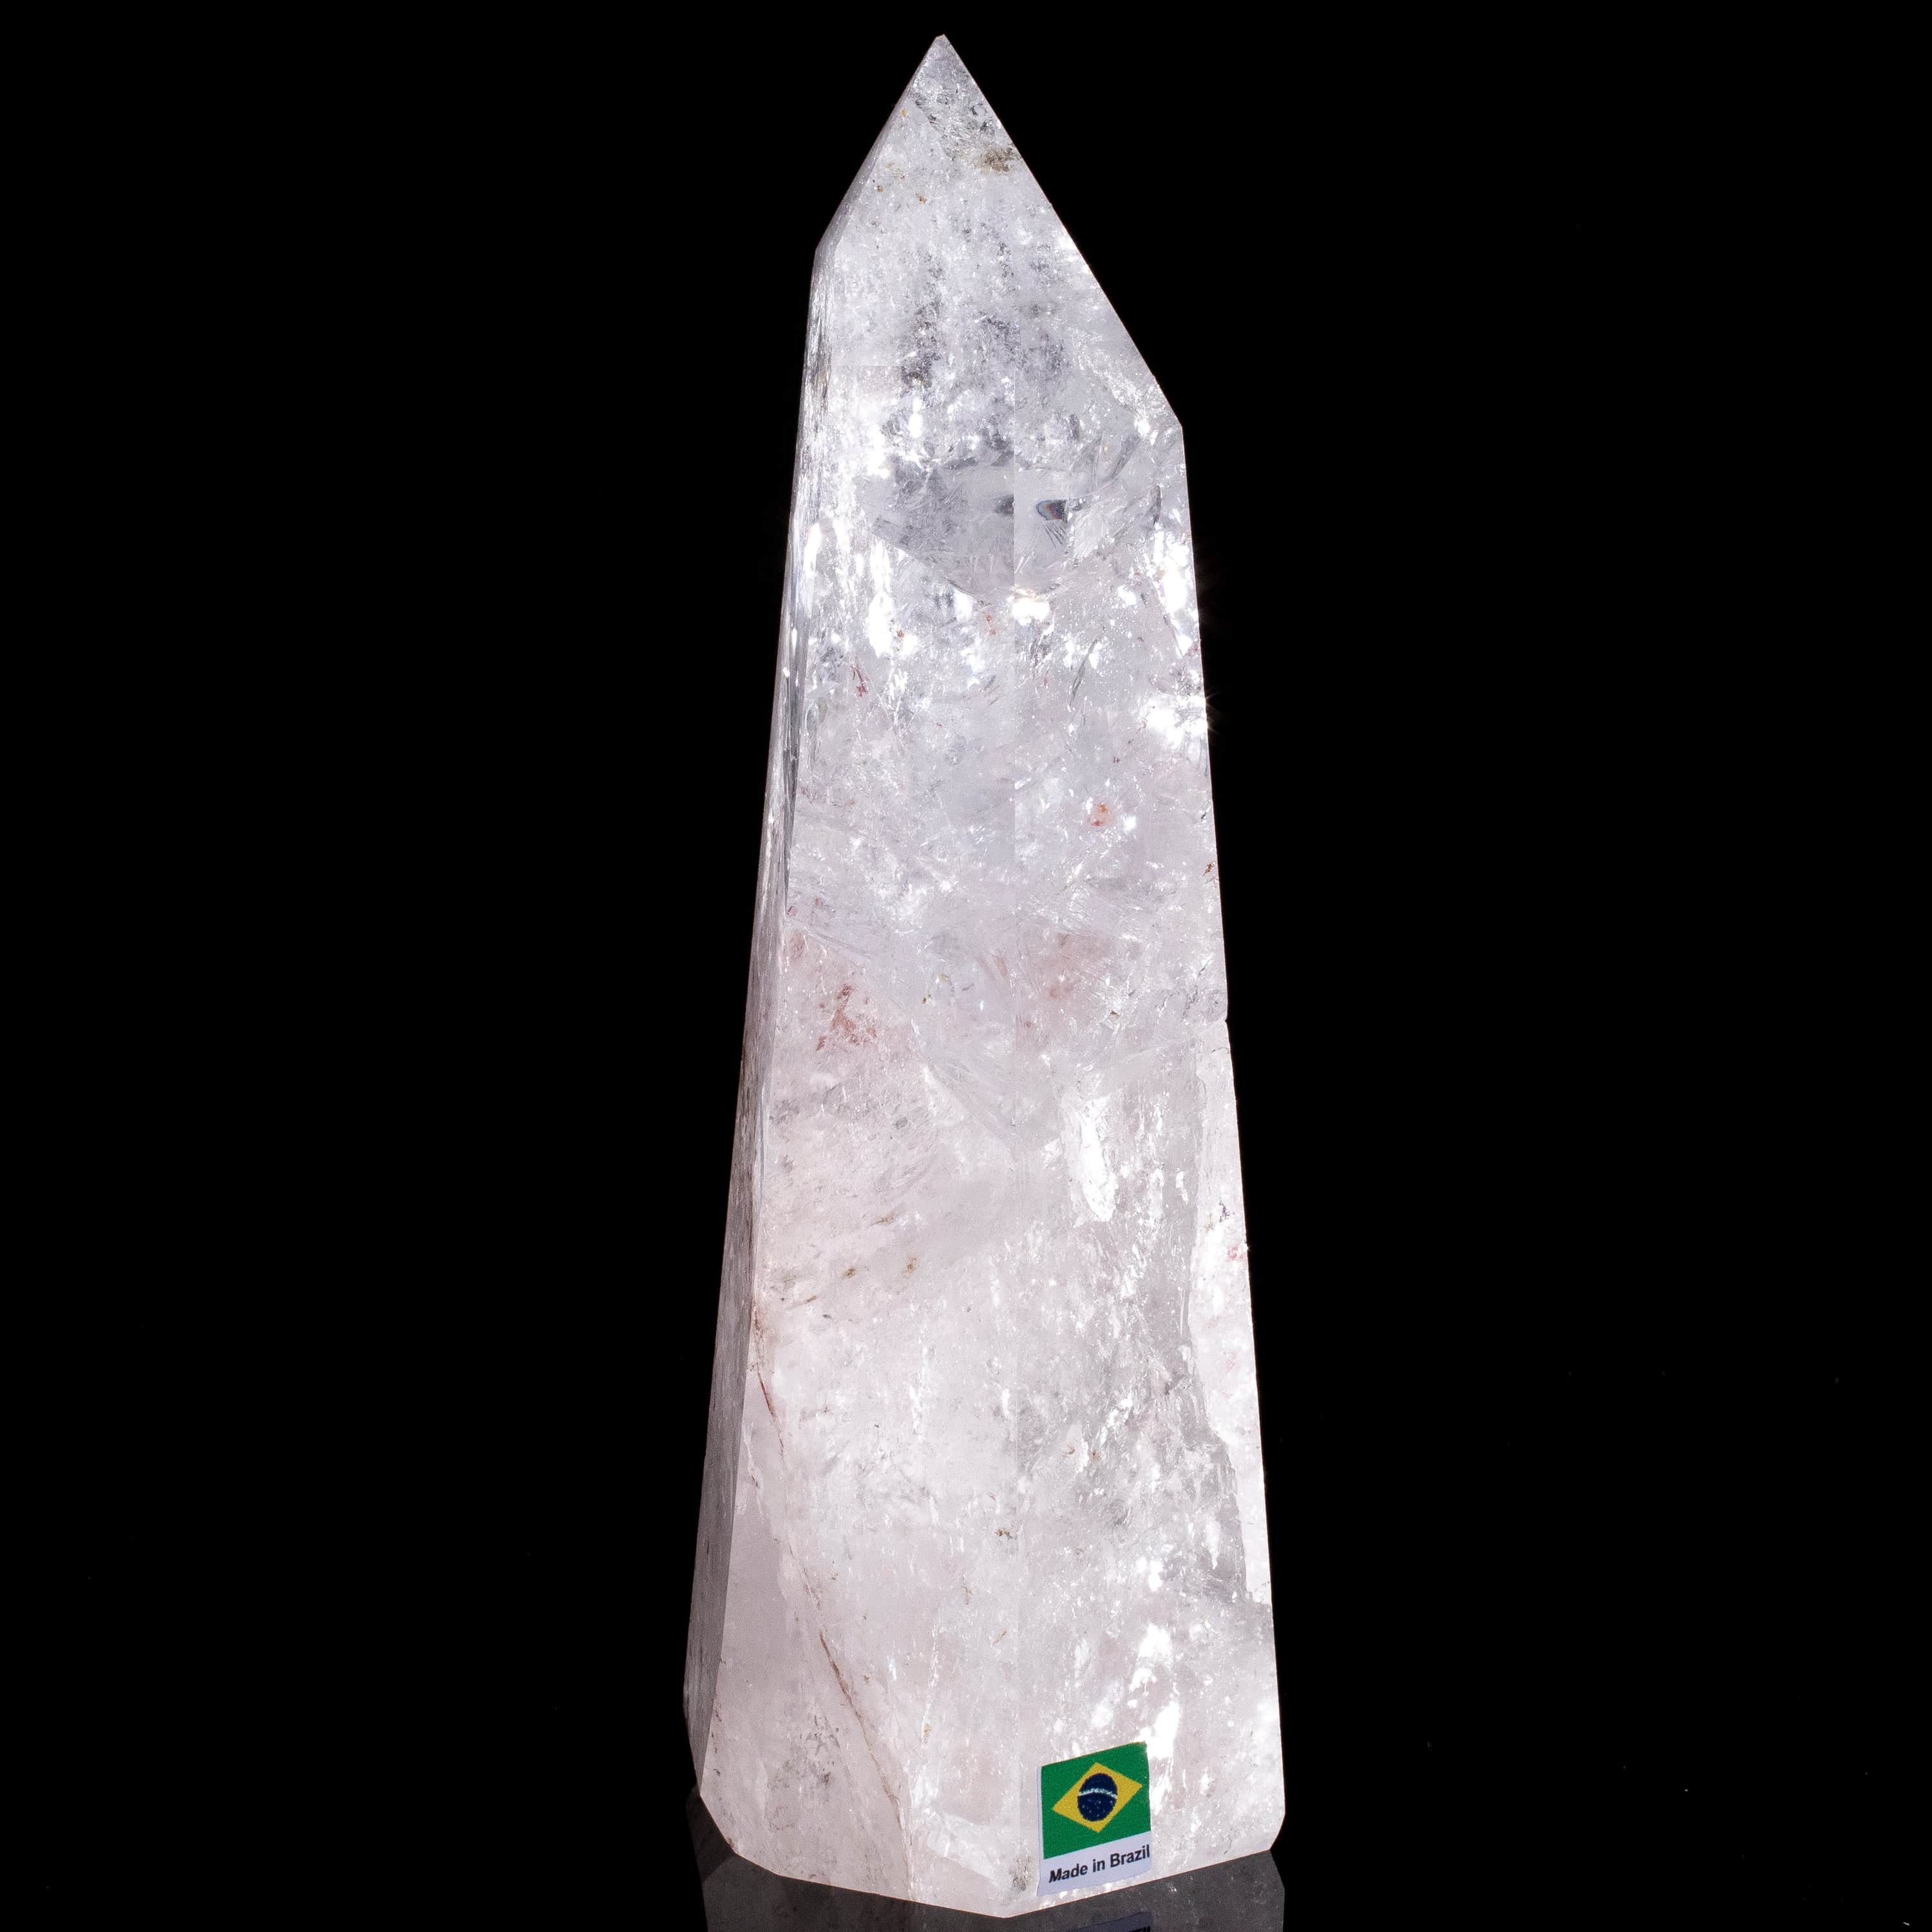 Kalifano Quartz Natural Quartz Obelisk from Brazil - 8" / 1,178 grams QZ1500.018